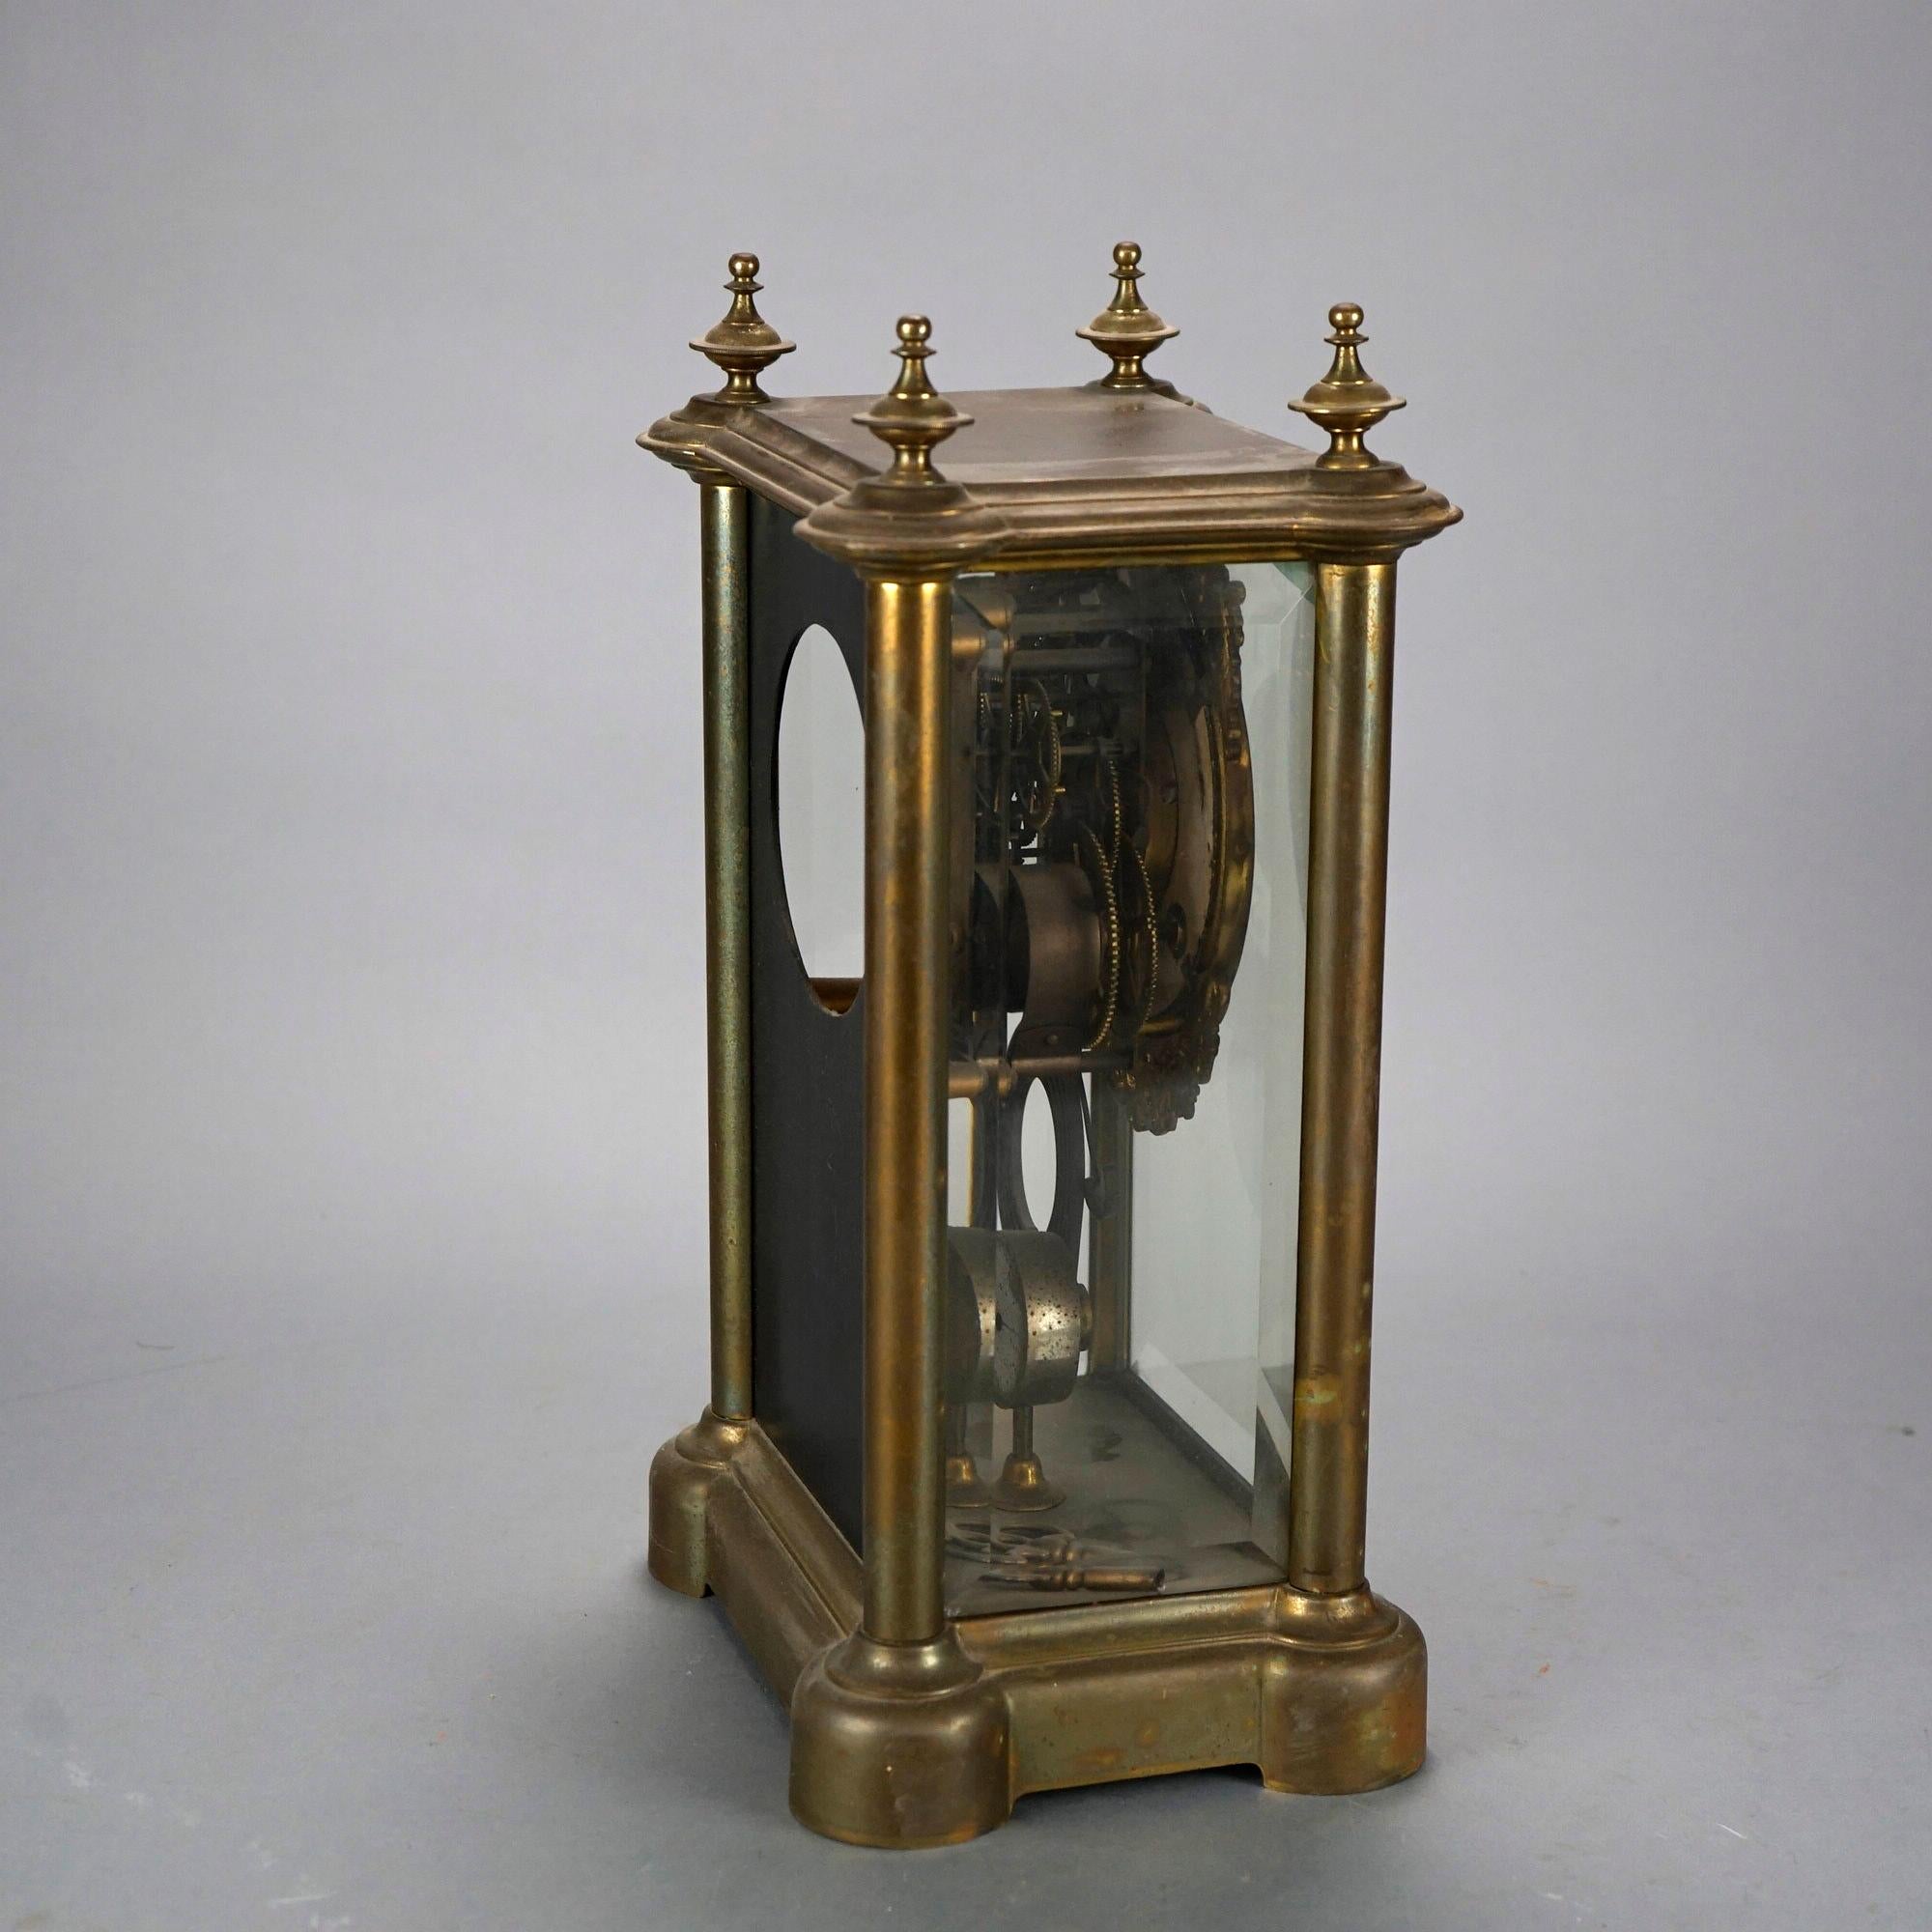 20th Century Antique Ansonia Crystal Regulator Mantle Clock Circa 1900